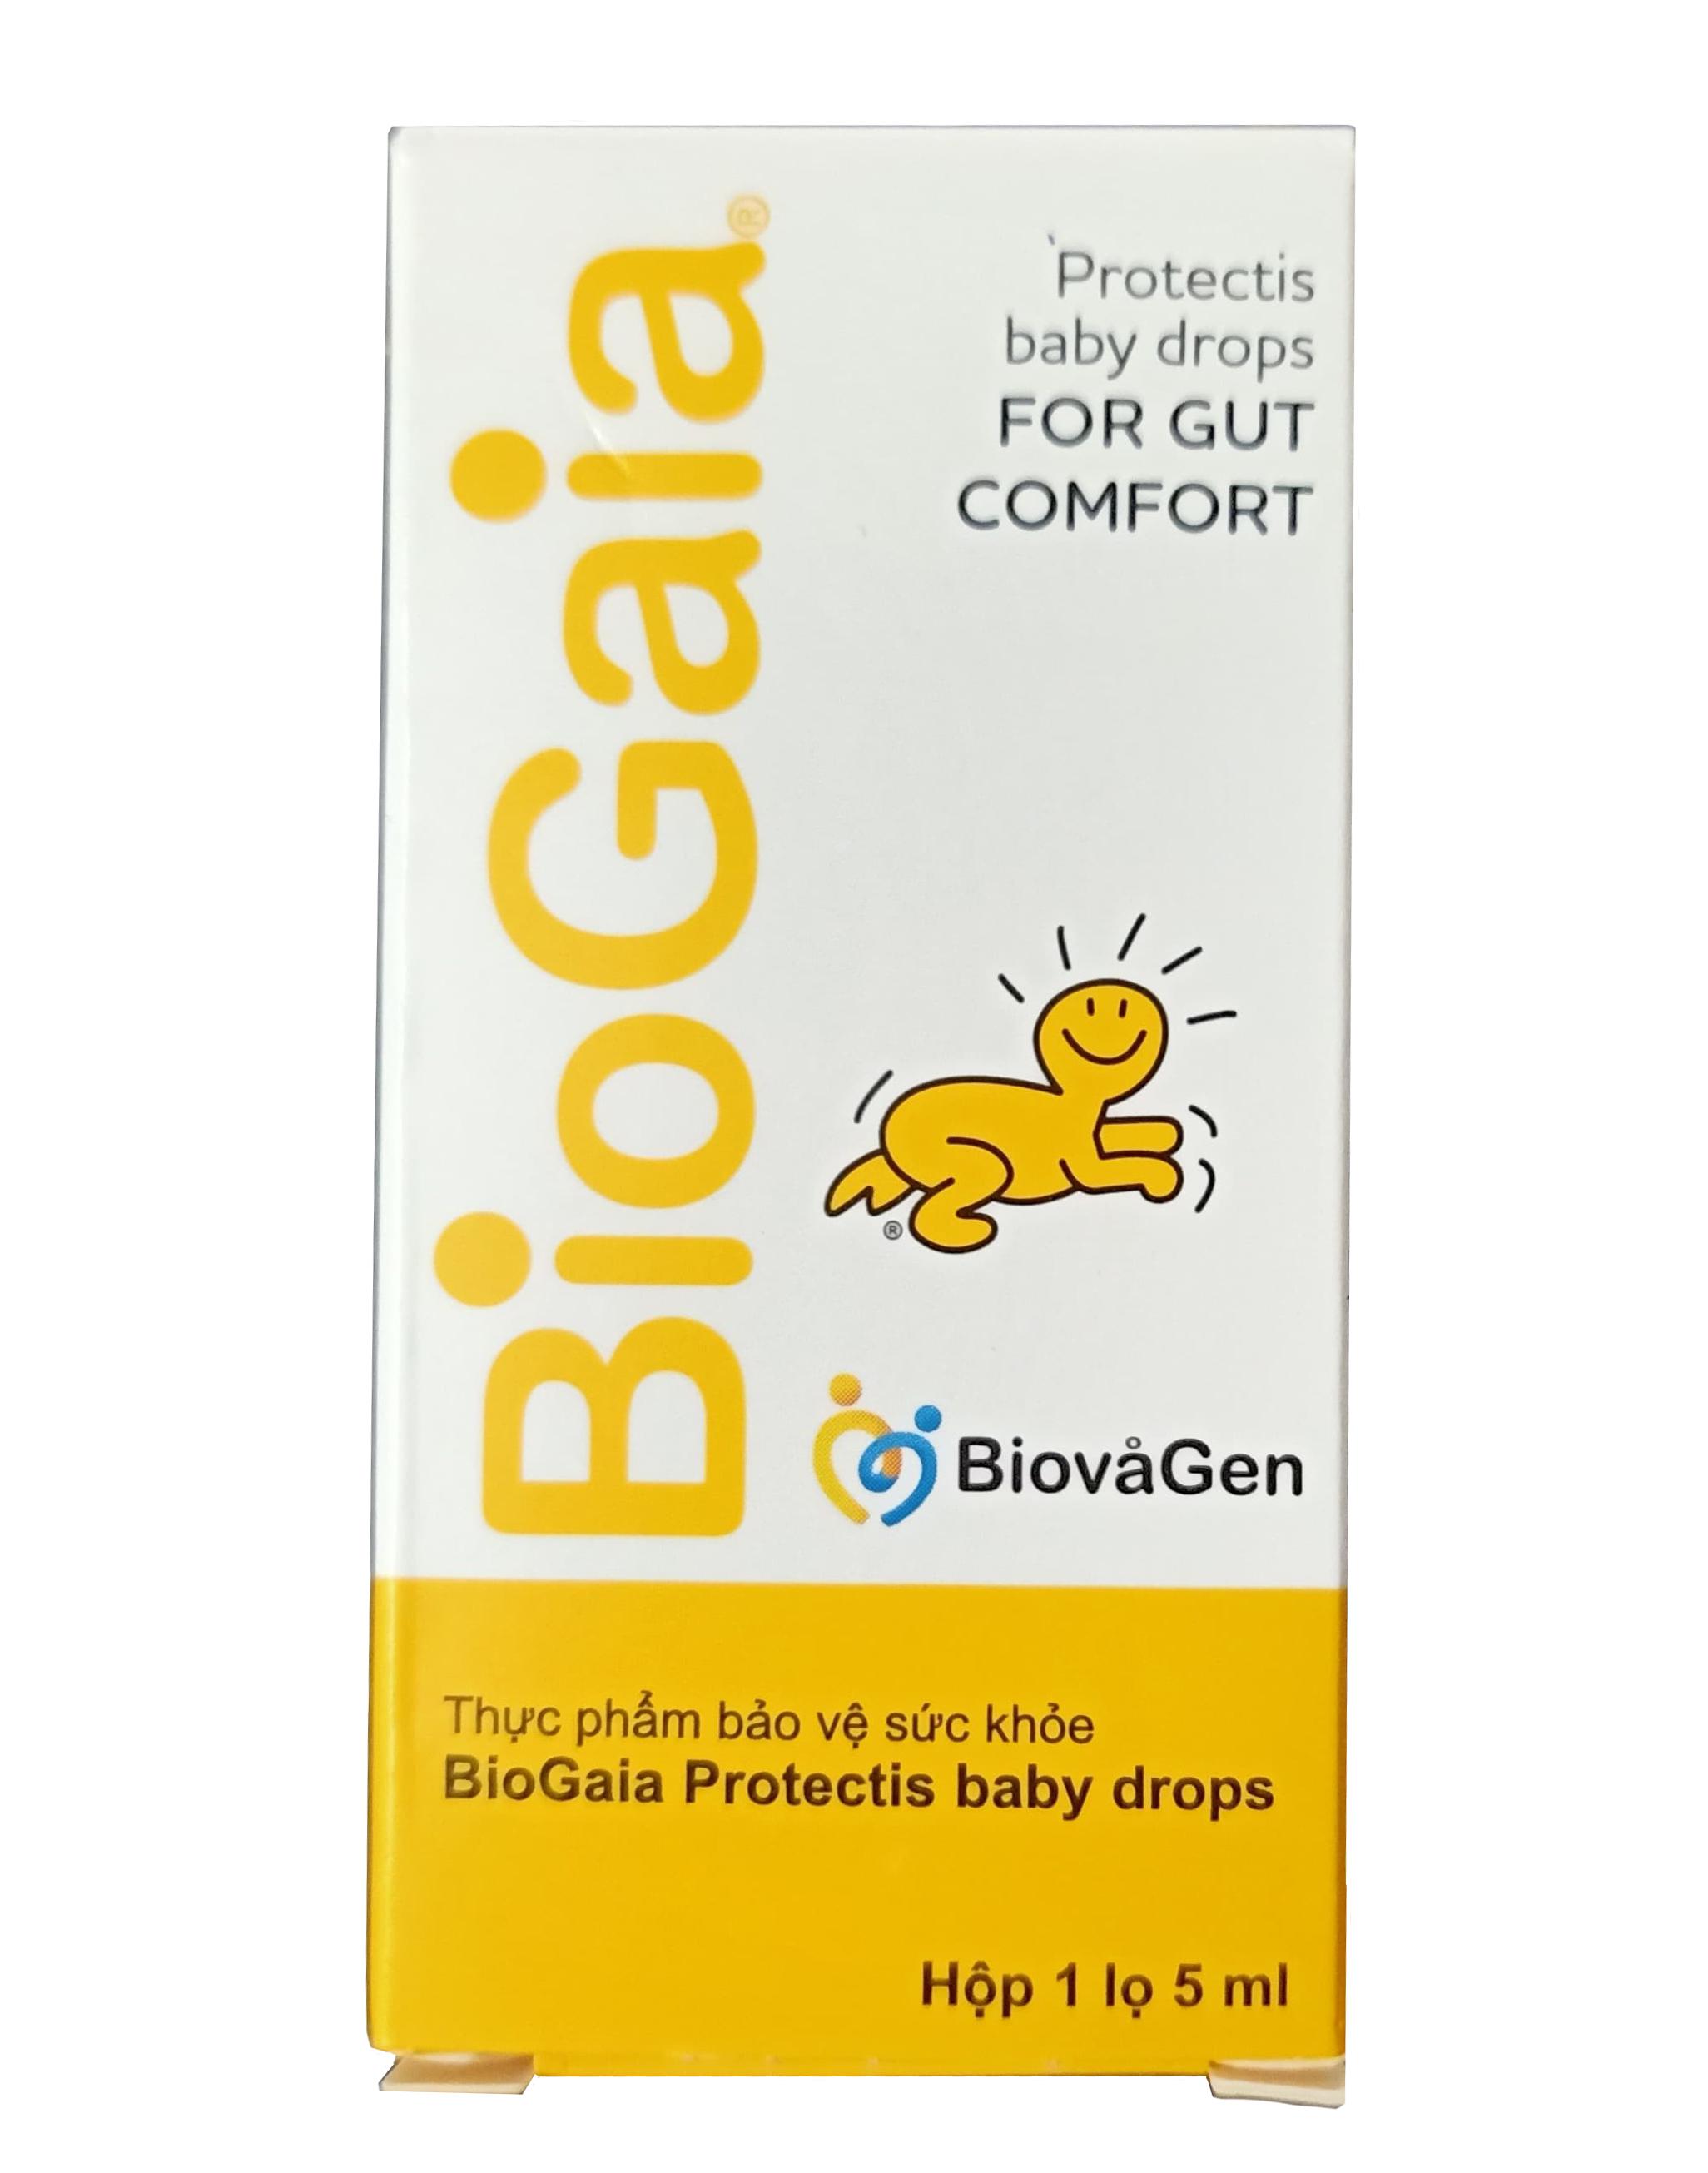 cách dụng biogaia cho trẻ sơ sinh, cách sử dụng biogaia, cách dùng biogaia, biogaia cho trẻ sơ sinh, cách sử dụng men biogaia, cách sử dụng biogaia cho trẻ sơ sinh, biogaia cách dùng, cách uống biogaia, biogaia dụng cho trẻ sơ sinh, cách dùng biogaia cho trẻ sơ sinh, cách dùng men biogaia, liều dùng biogaia, biogaia uống như thế nào, biogaia dùng cho trẻ mấy tuổi, cách sử dụng men vi sinh biogaia, biogaia nên uống lúc nào, có nên dùng biogaia cho trẻ sơ sinh, biogaia webtretho, biogaia dùng khi nào, biogaia cho bé sơ sinh, biogaia sử dụng như thế nào, cách dùng biogaia pháp, bổ sung biogaia cho trẻ sơ sinh, men biogaia cho trẻ sơ sinh, cách dụng biogaia gouttes, hướng dẫn sử dụng biogaia, uống biogaia vào lúc nào, thuốc biogaia cho trẻ sơ sinh, uống biogaia vào thời gian nào, biogaia dùng như thế nào, thuốc biogaia uống như thế nào, biogaia uống khi nào, biogaia cho bé, hướng dẫn sử dụng men biogaia, sử dụng biogaia, thuốc biogaia, biogaia có dùng được cho trẻ sơ sinh không, Biogaia dùng cho trẻ sơ sinh, hướng dẫn sử dụng Biogaia cho trẻ sơ sinh, Biogaia có dùng được cho trẻ sơ sinh, có nên bổ sung Biogaia cho trẻ sơ sinh, Biogaia dành cho trẻ sơ sinh